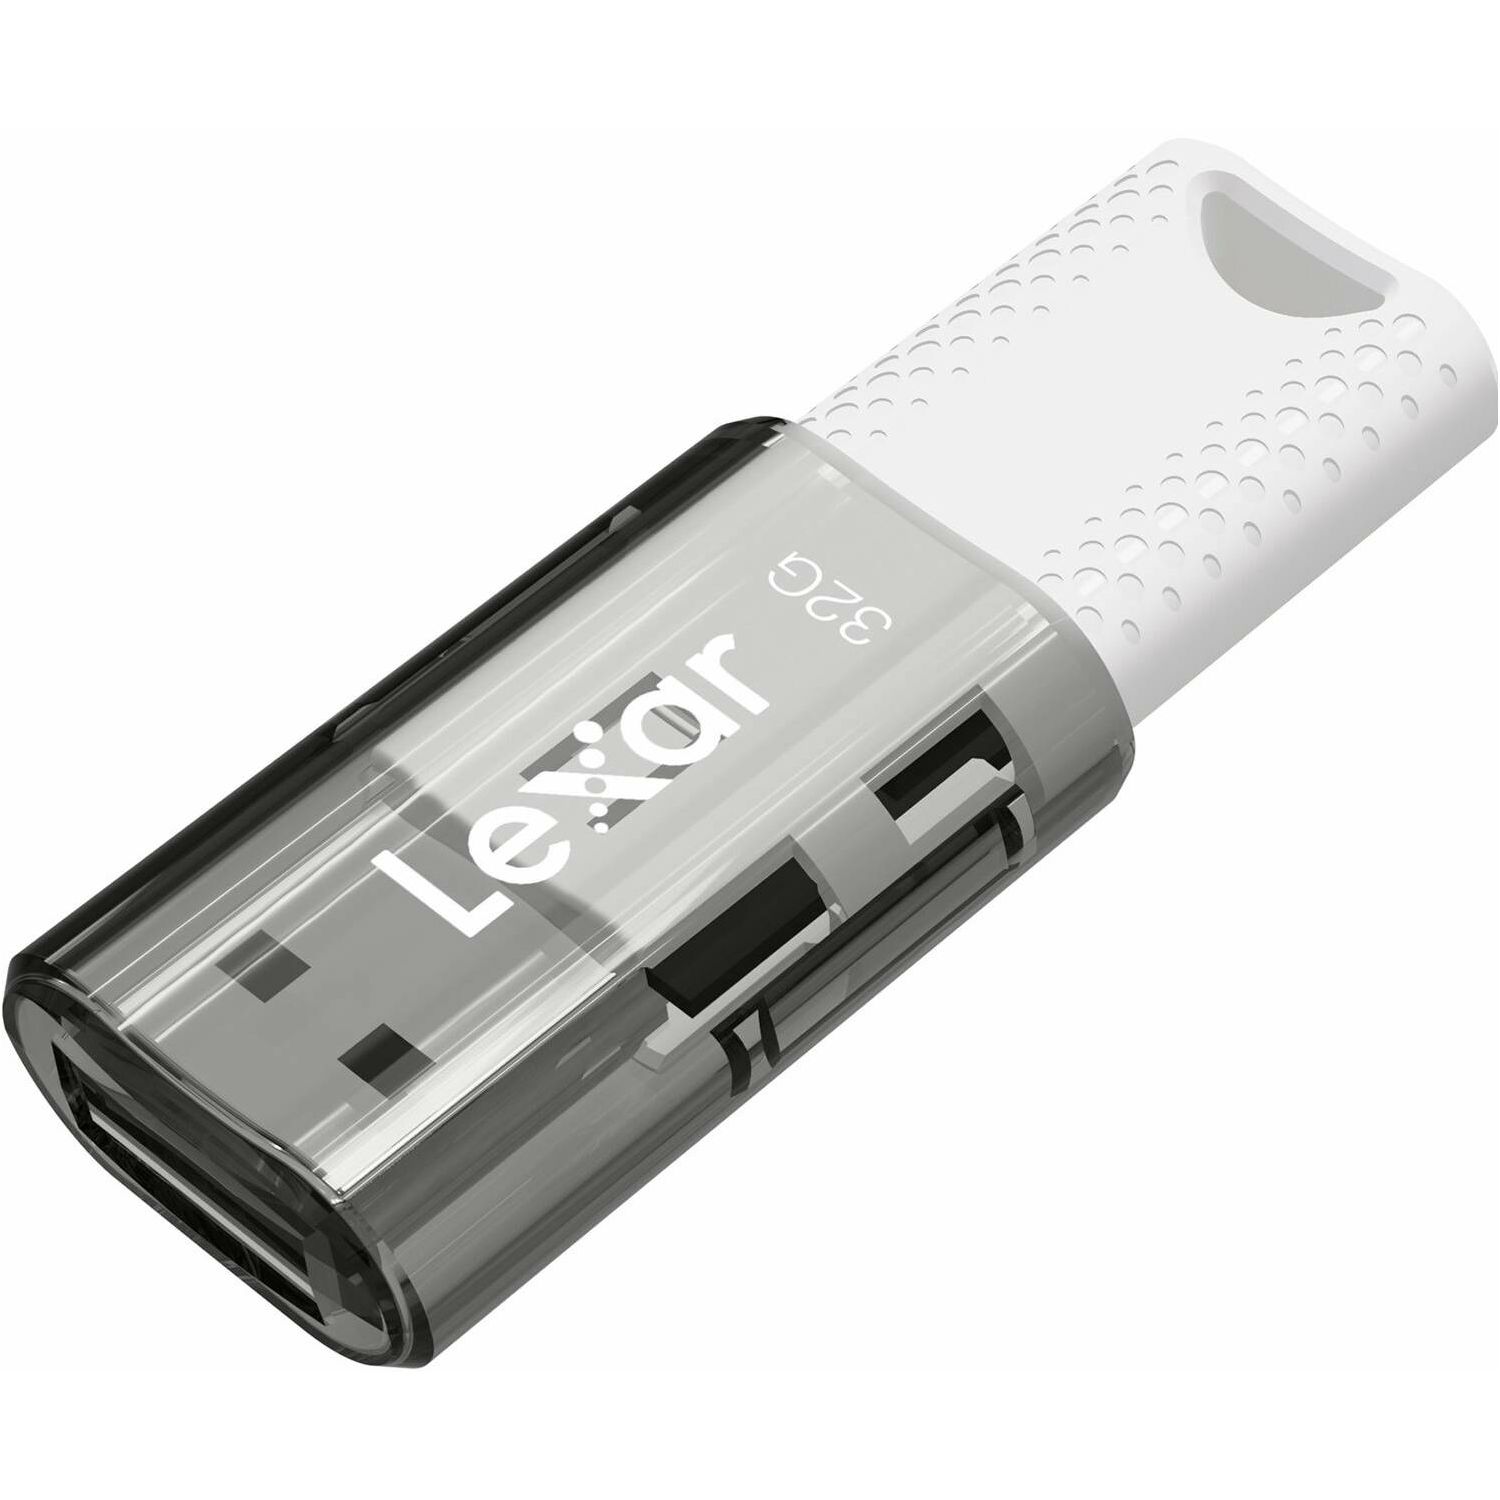 Lexar JumpDrive S60 32GB USB 2.0 Flash Drive memorija (LJDS060032G-BNBNG)